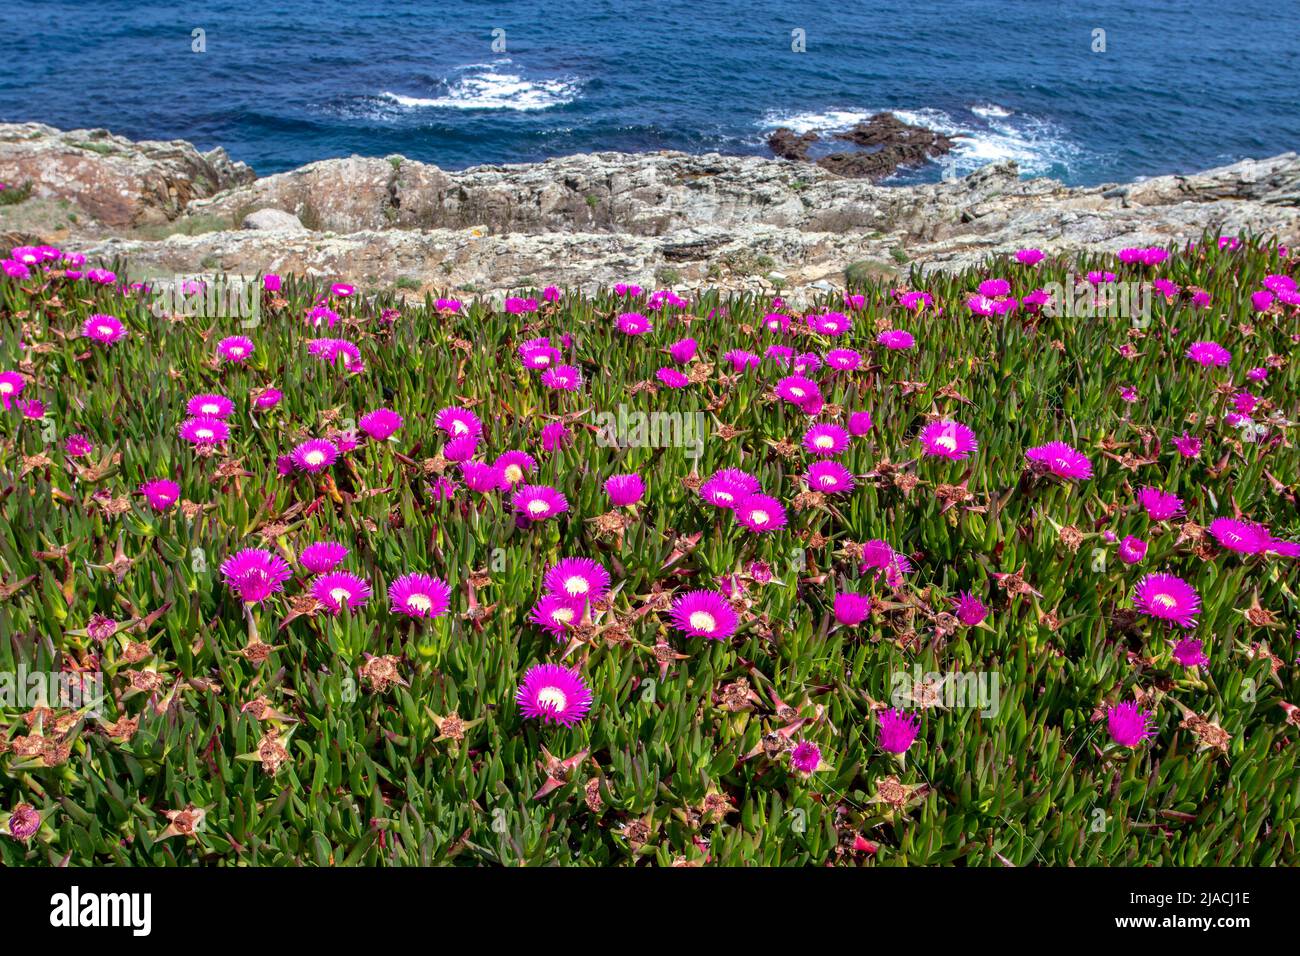 Eispflanze oder carpobrotus edulis oder hottentot-Feige oder saure Feige oder Autobahneispflanze mit leuchtend rosa Blüten am Meeresufer im Frühjahr Stockfoto